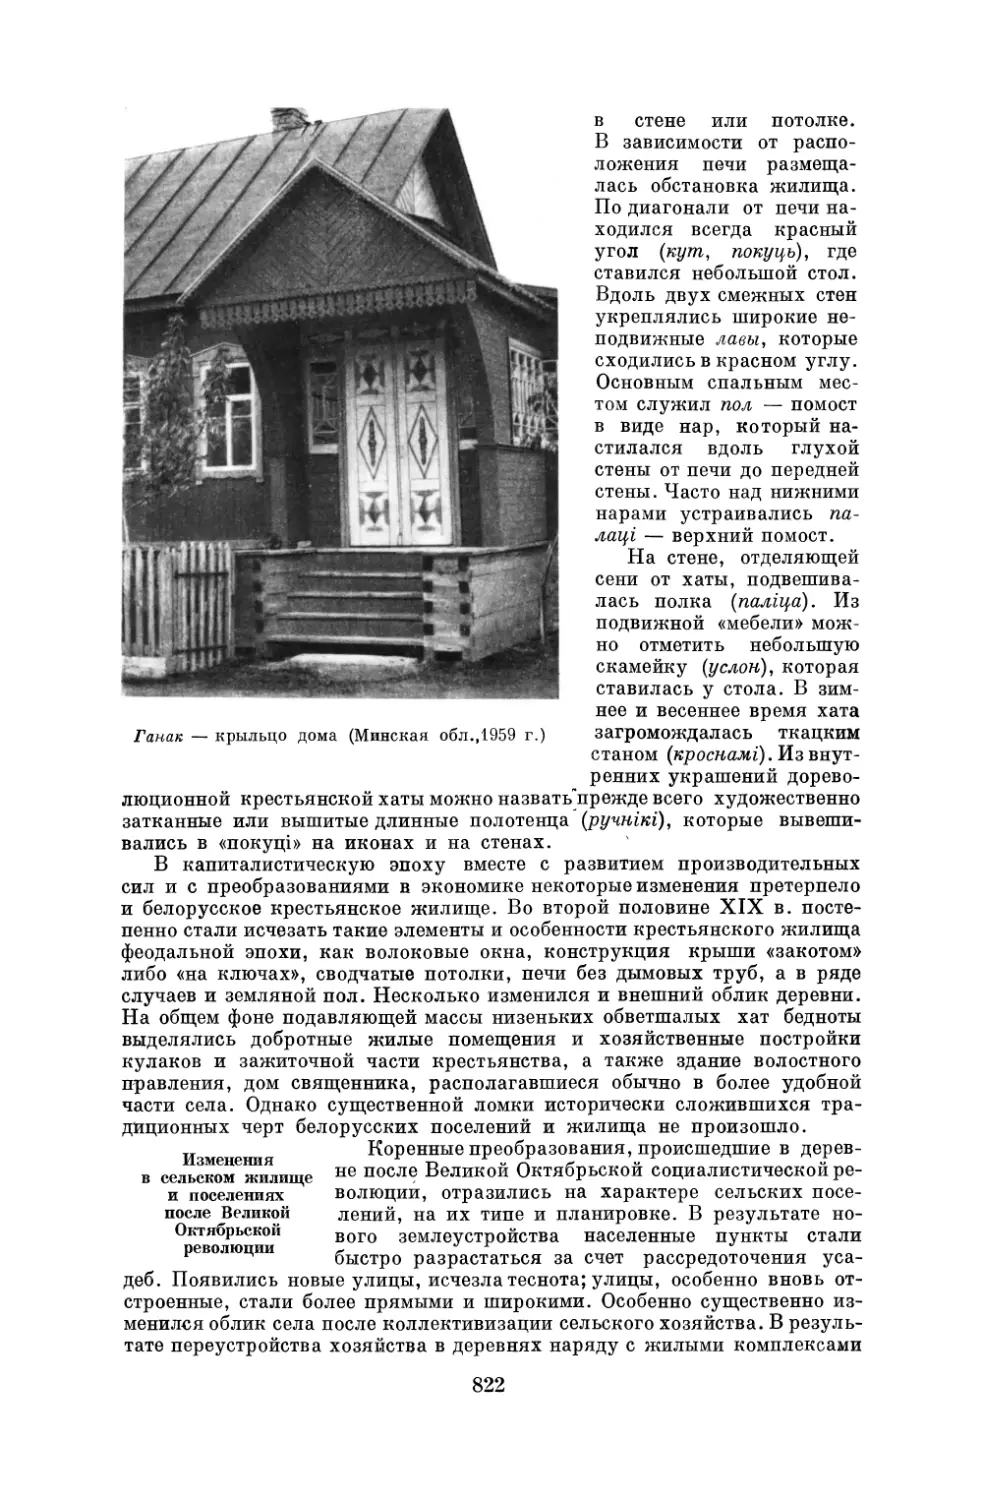 Изменения в сельском жилище и поселениях после Великой Октябрьской революции